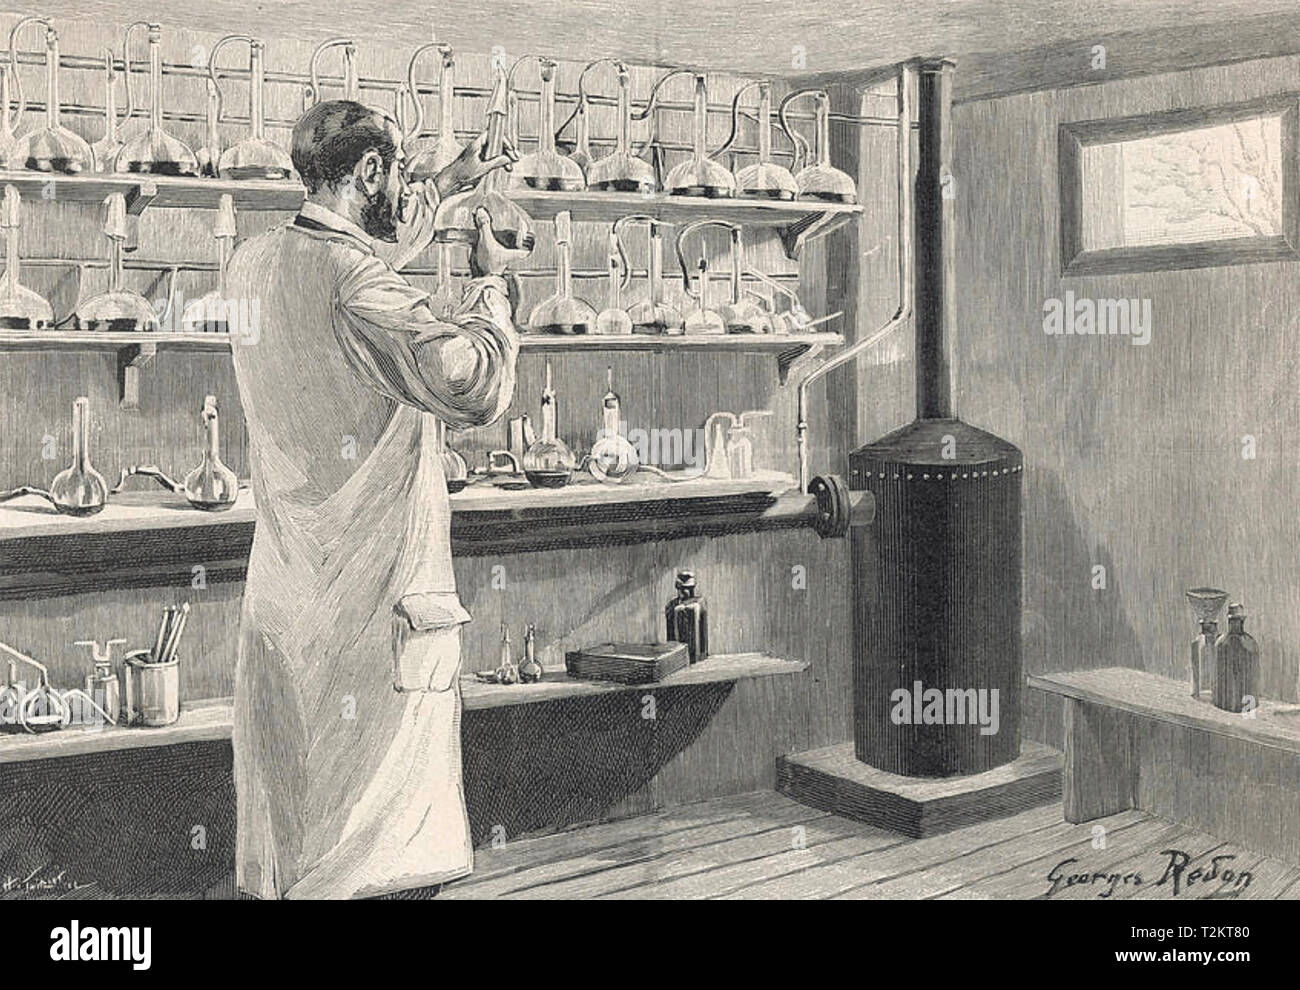 PIERRE PAUL EMILE ROUX (1853-1933), médico francés y como co-fundador del Instituto Pasteur, fue responsable de la producción del Instituto del suero anti-difteria como se ve en la ilustración Foto de stock